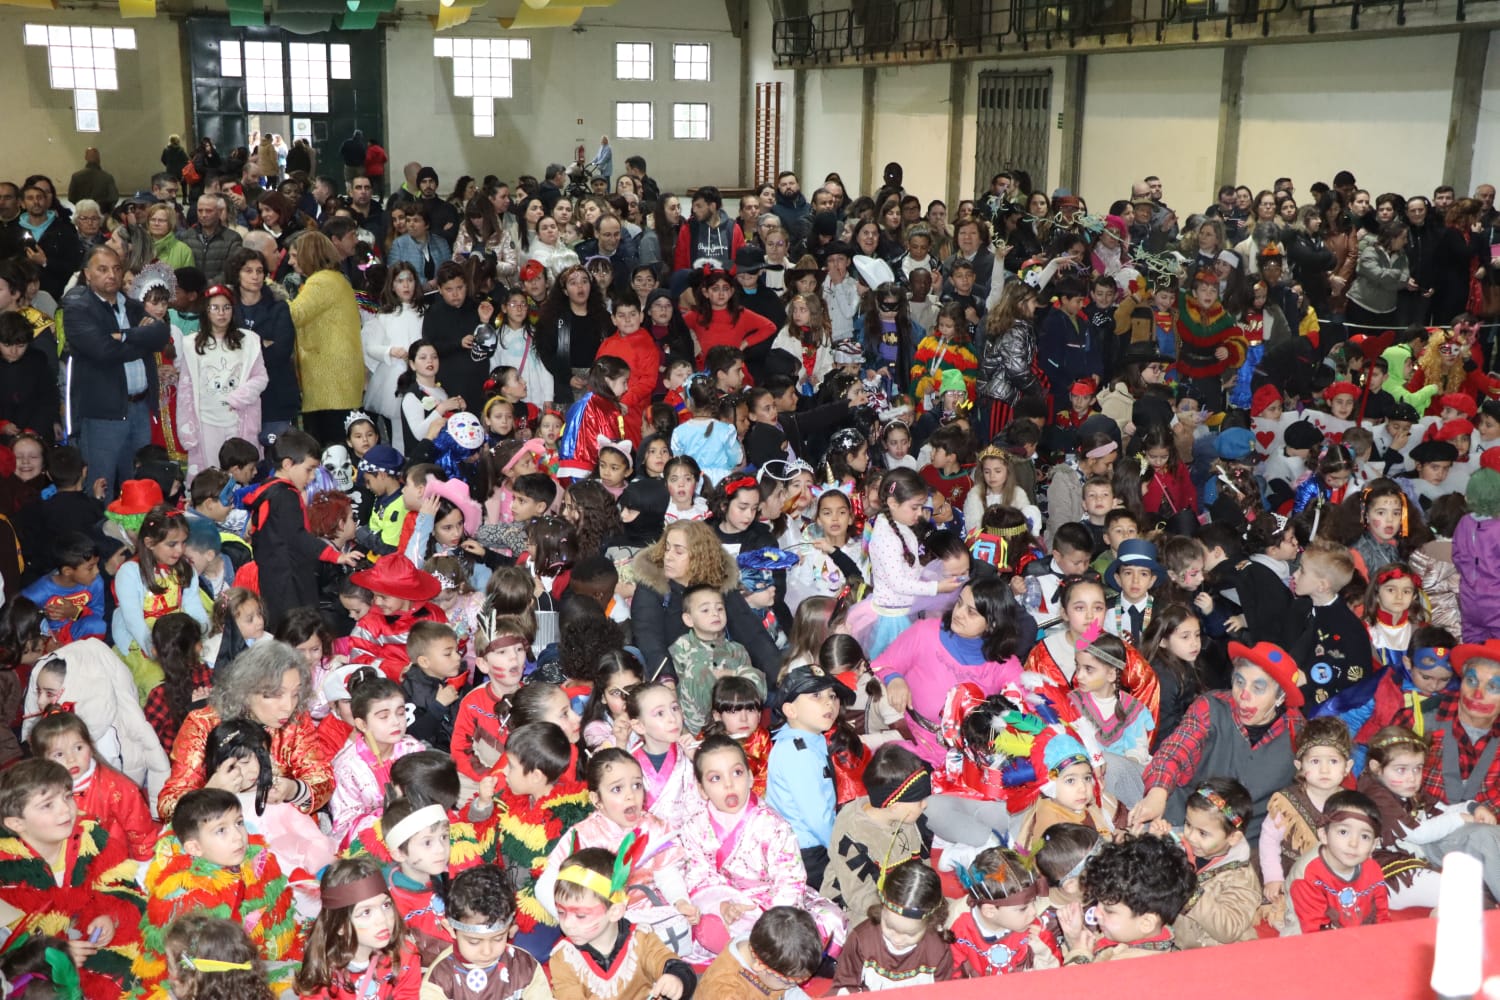 Cerca de 600 crianças festejaram o Carnaval esta manhã em Macedo de Cavaleiros